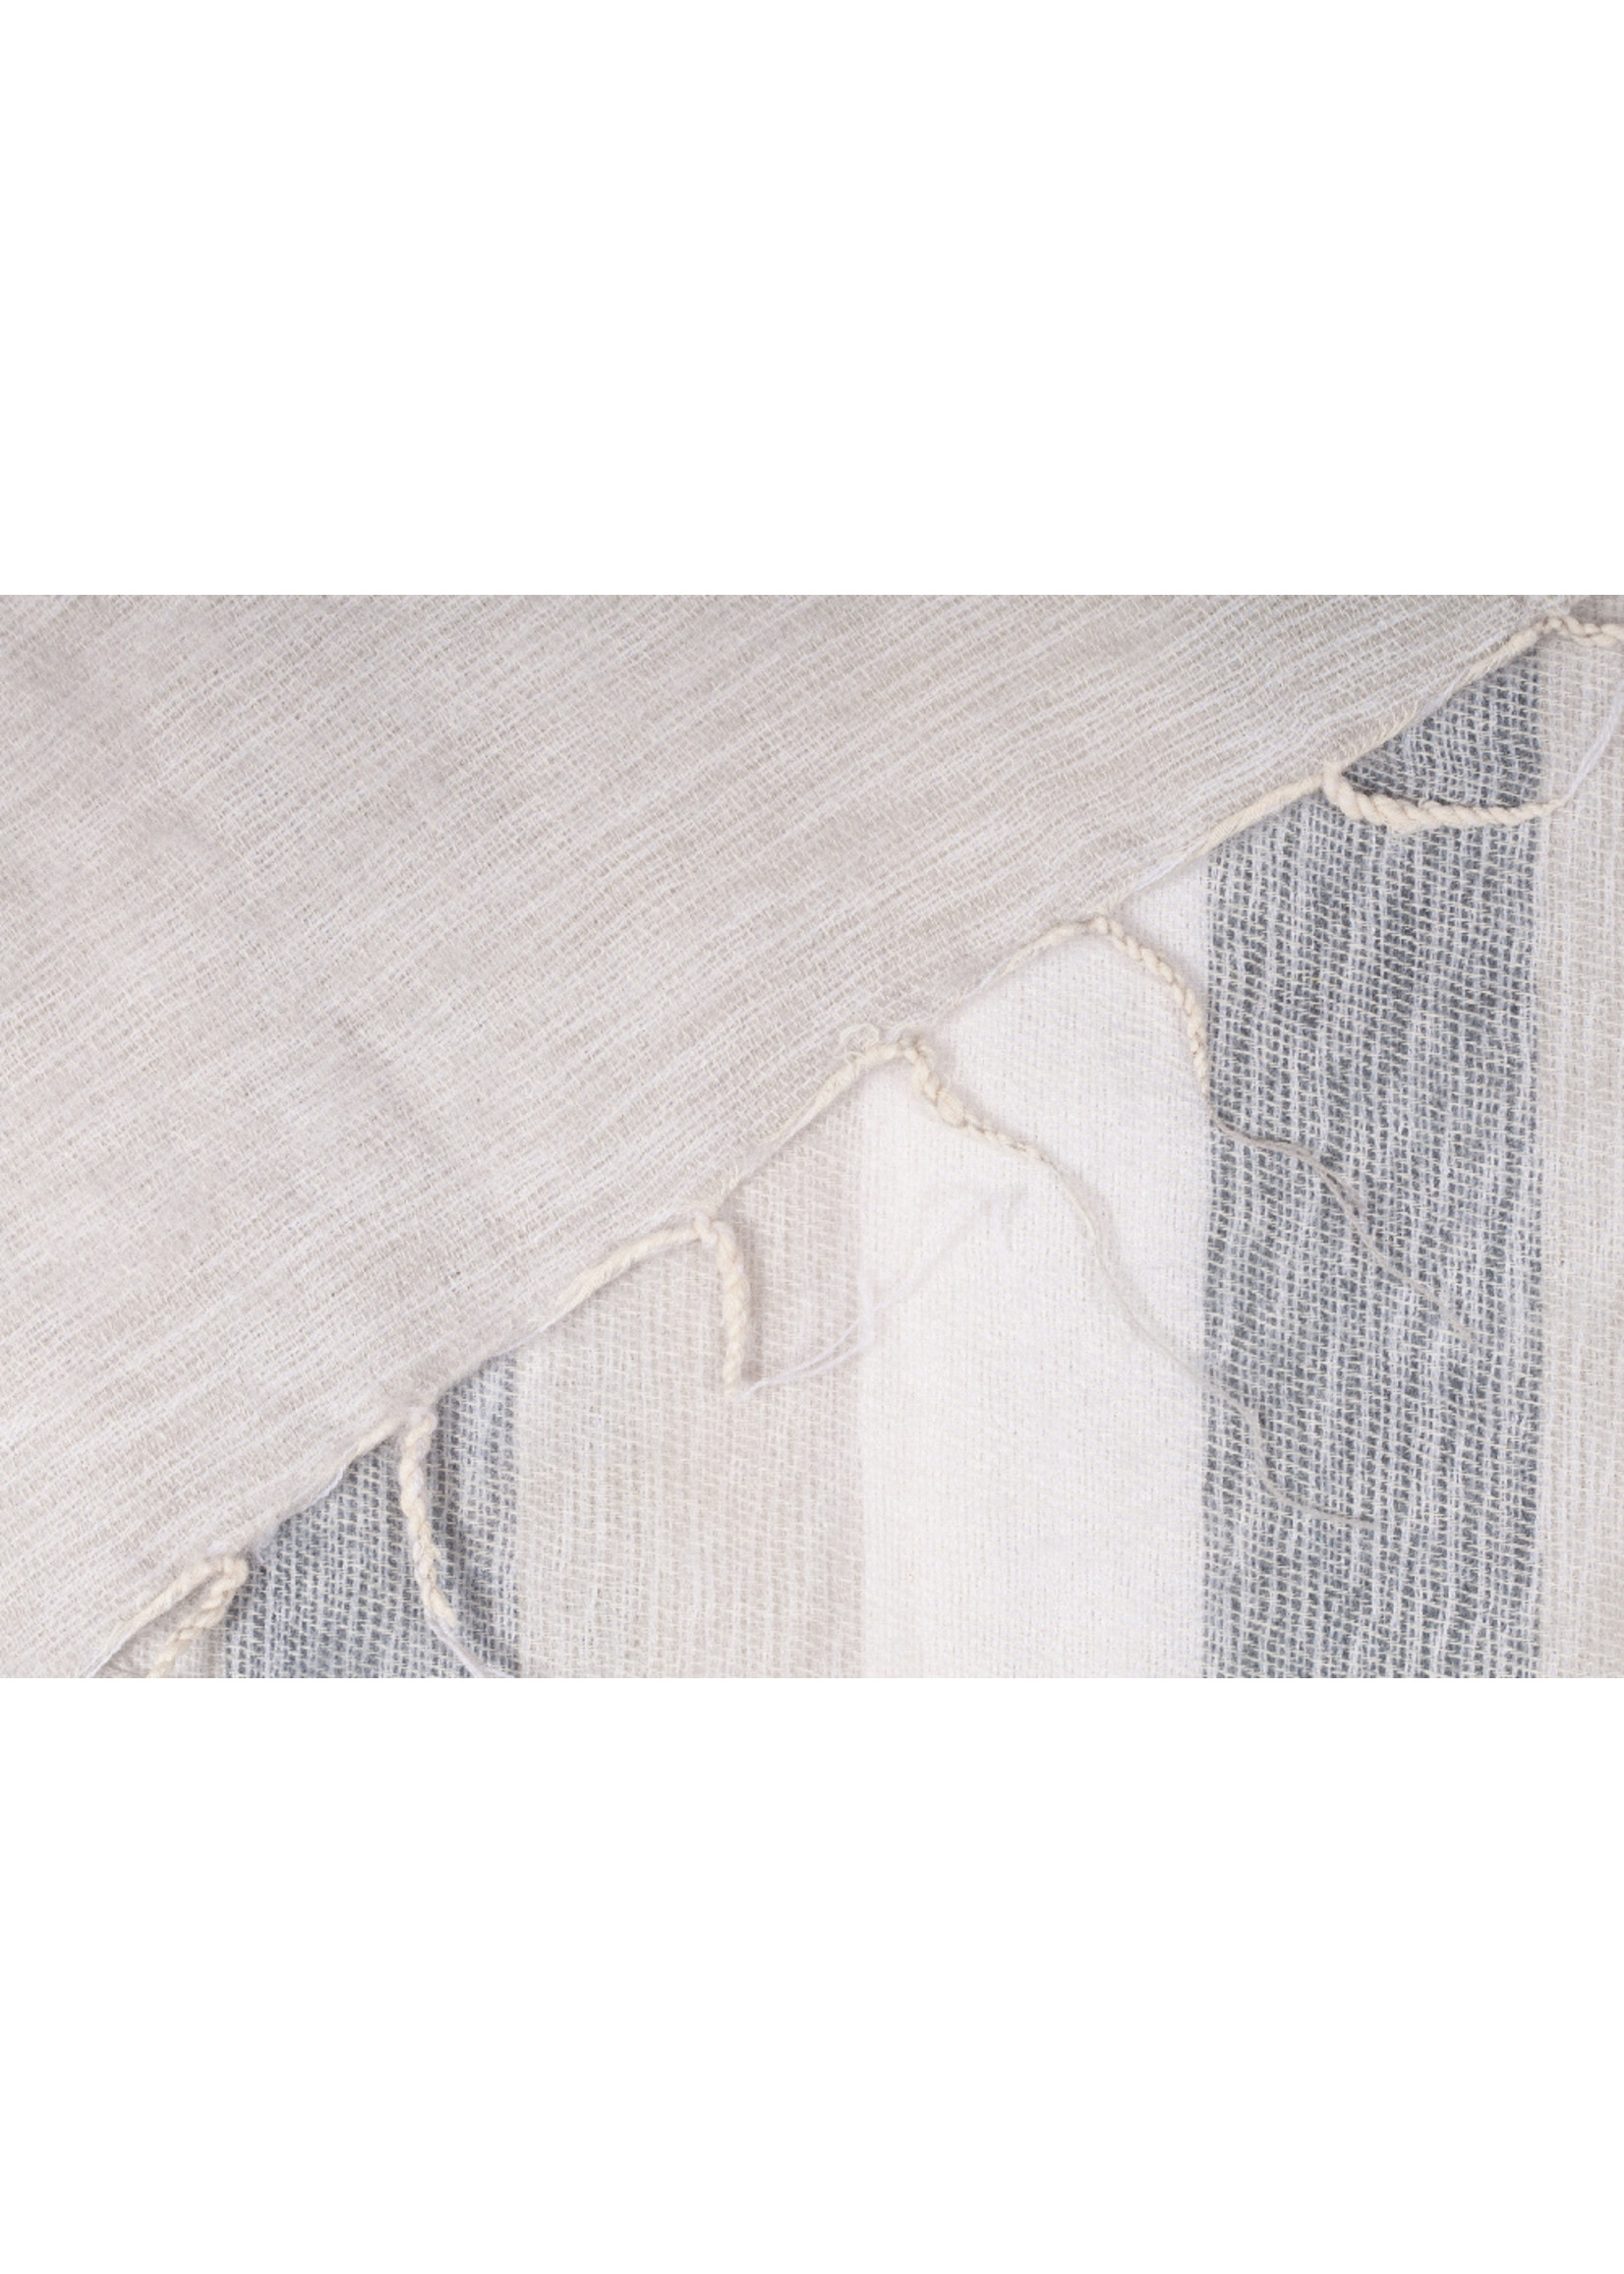 Sjaal met Verhaal Shawl 180x80 cm (wool-look) cream-grey-ecru